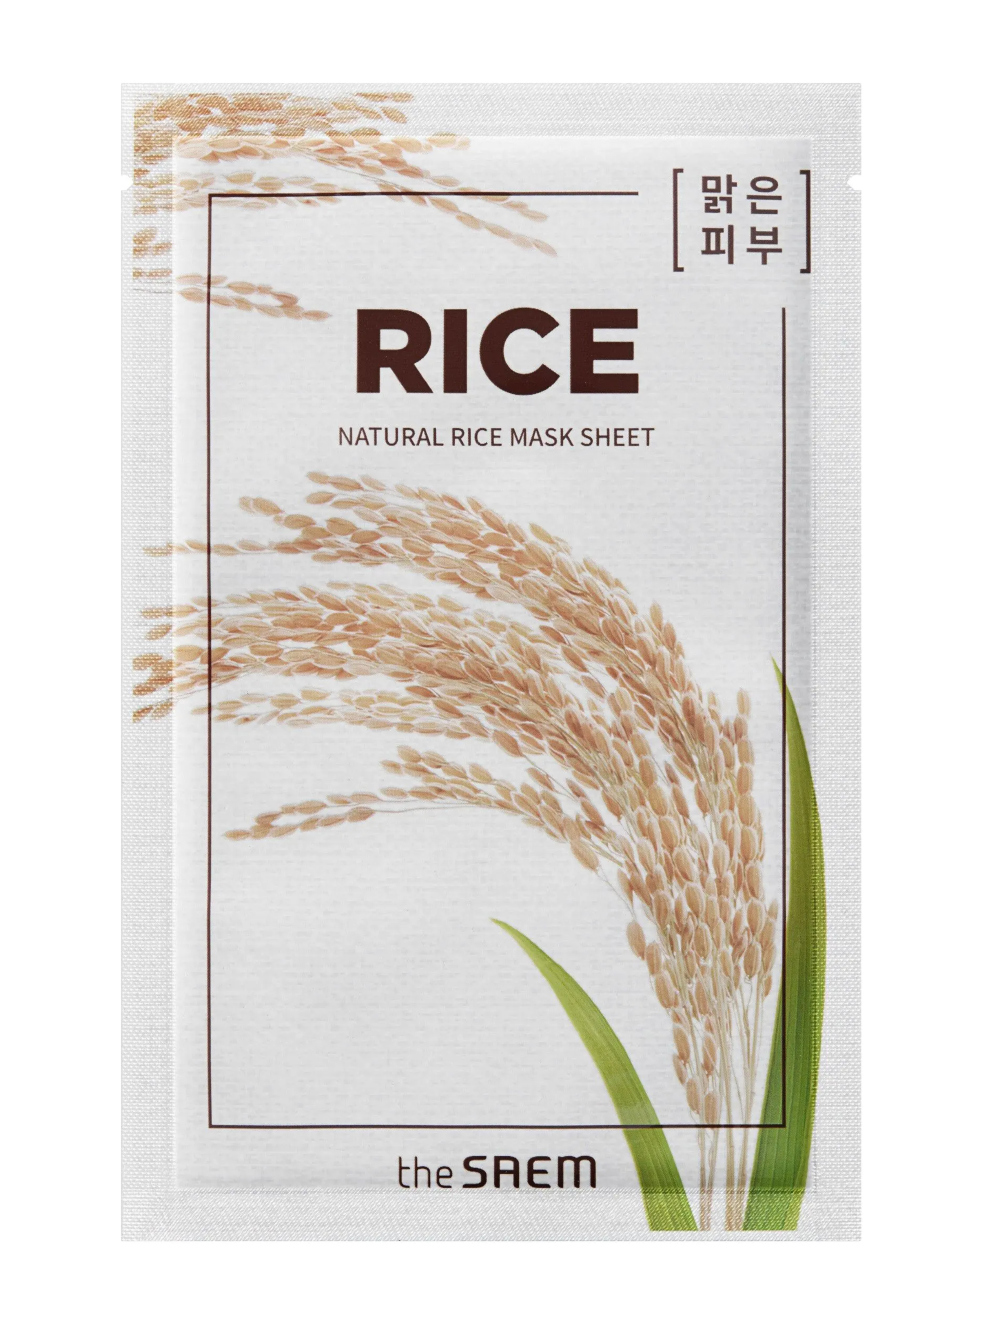 Mascarillas hidratantes, nutritivas y purificantes ideales para un tratamiento facial intensivo: de arroz Natural Rice Mask Sheet de The Saem